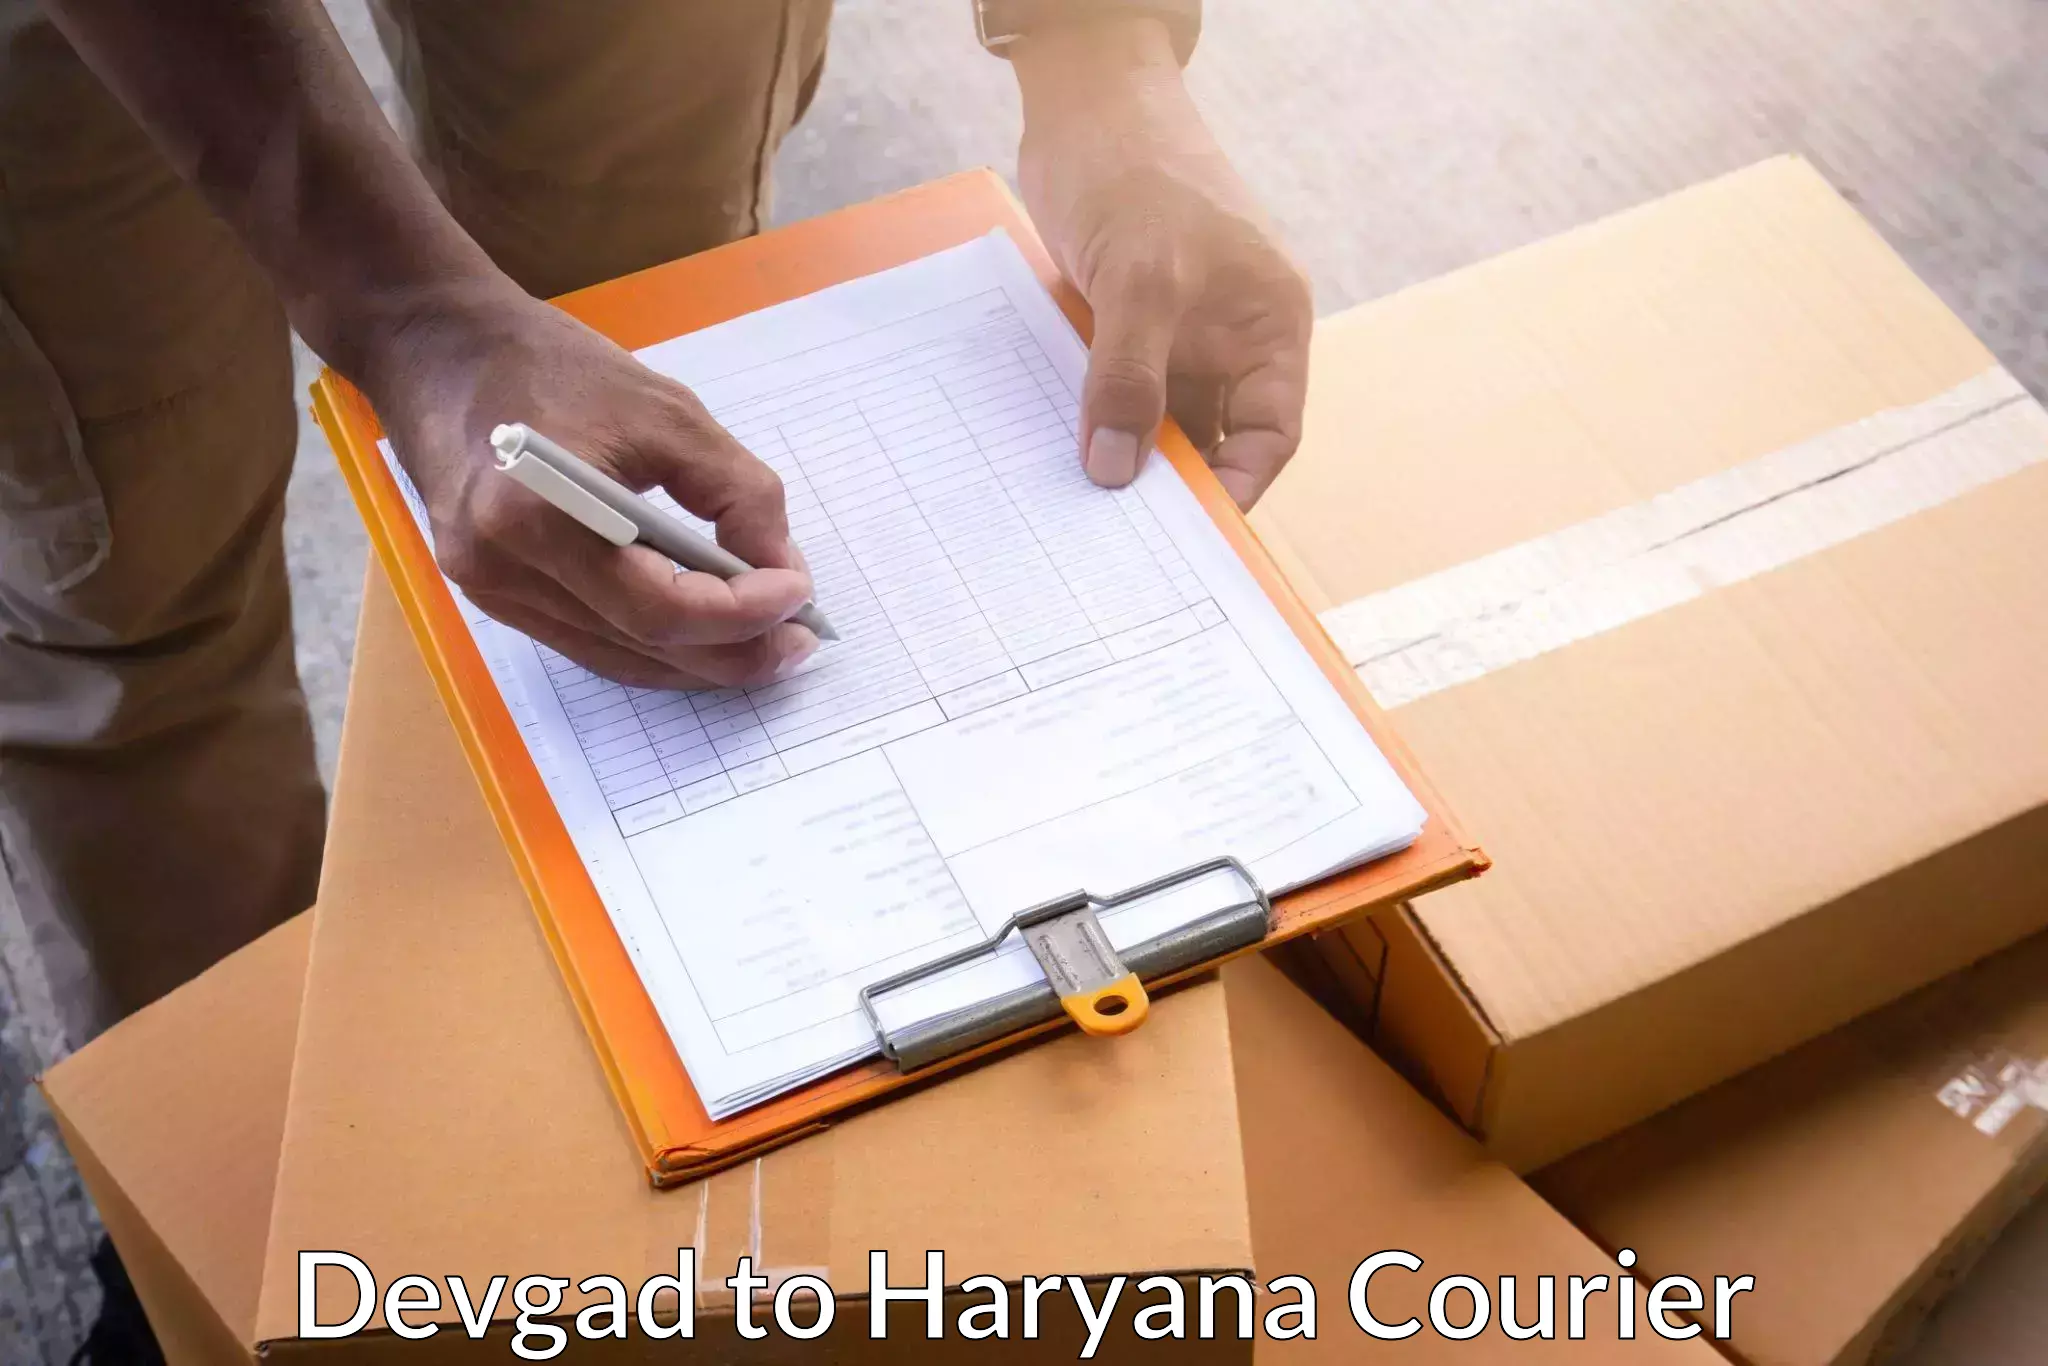 Full-service courier options Devgad to IIIT Sonepat